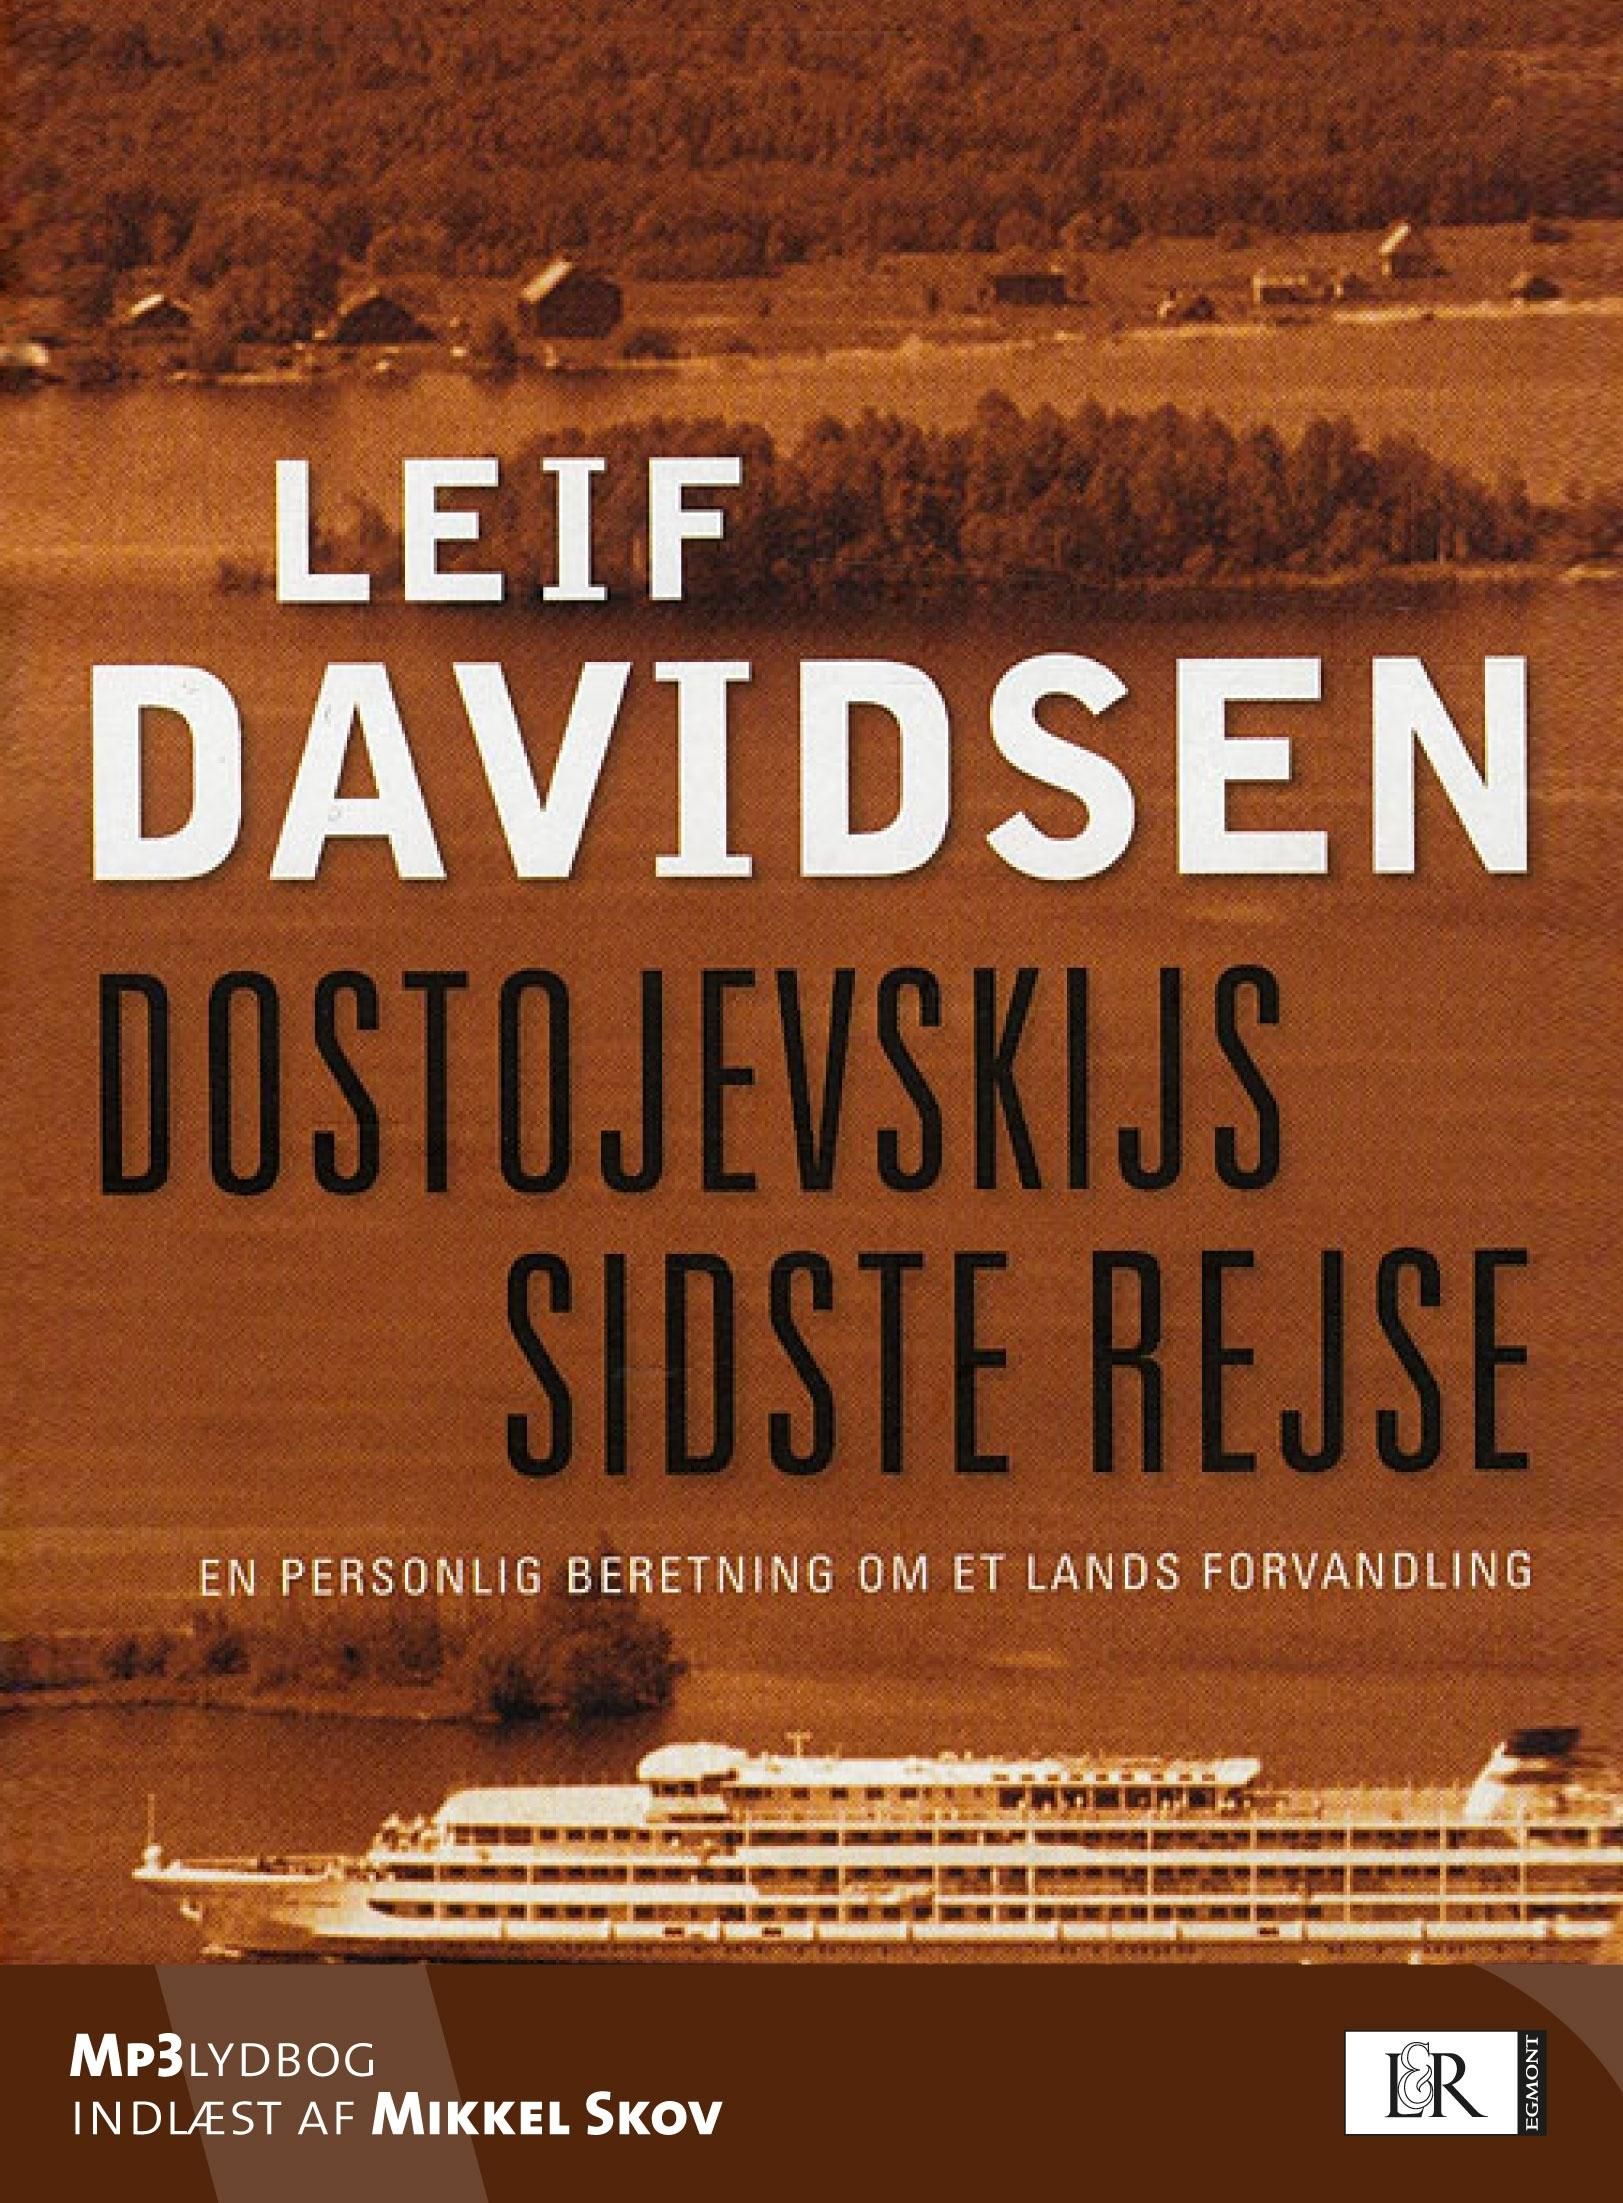 Dostojevskijs sidste rejse. En personlig beretning om et lands forvandling, ljudbok av Leif Davidsen